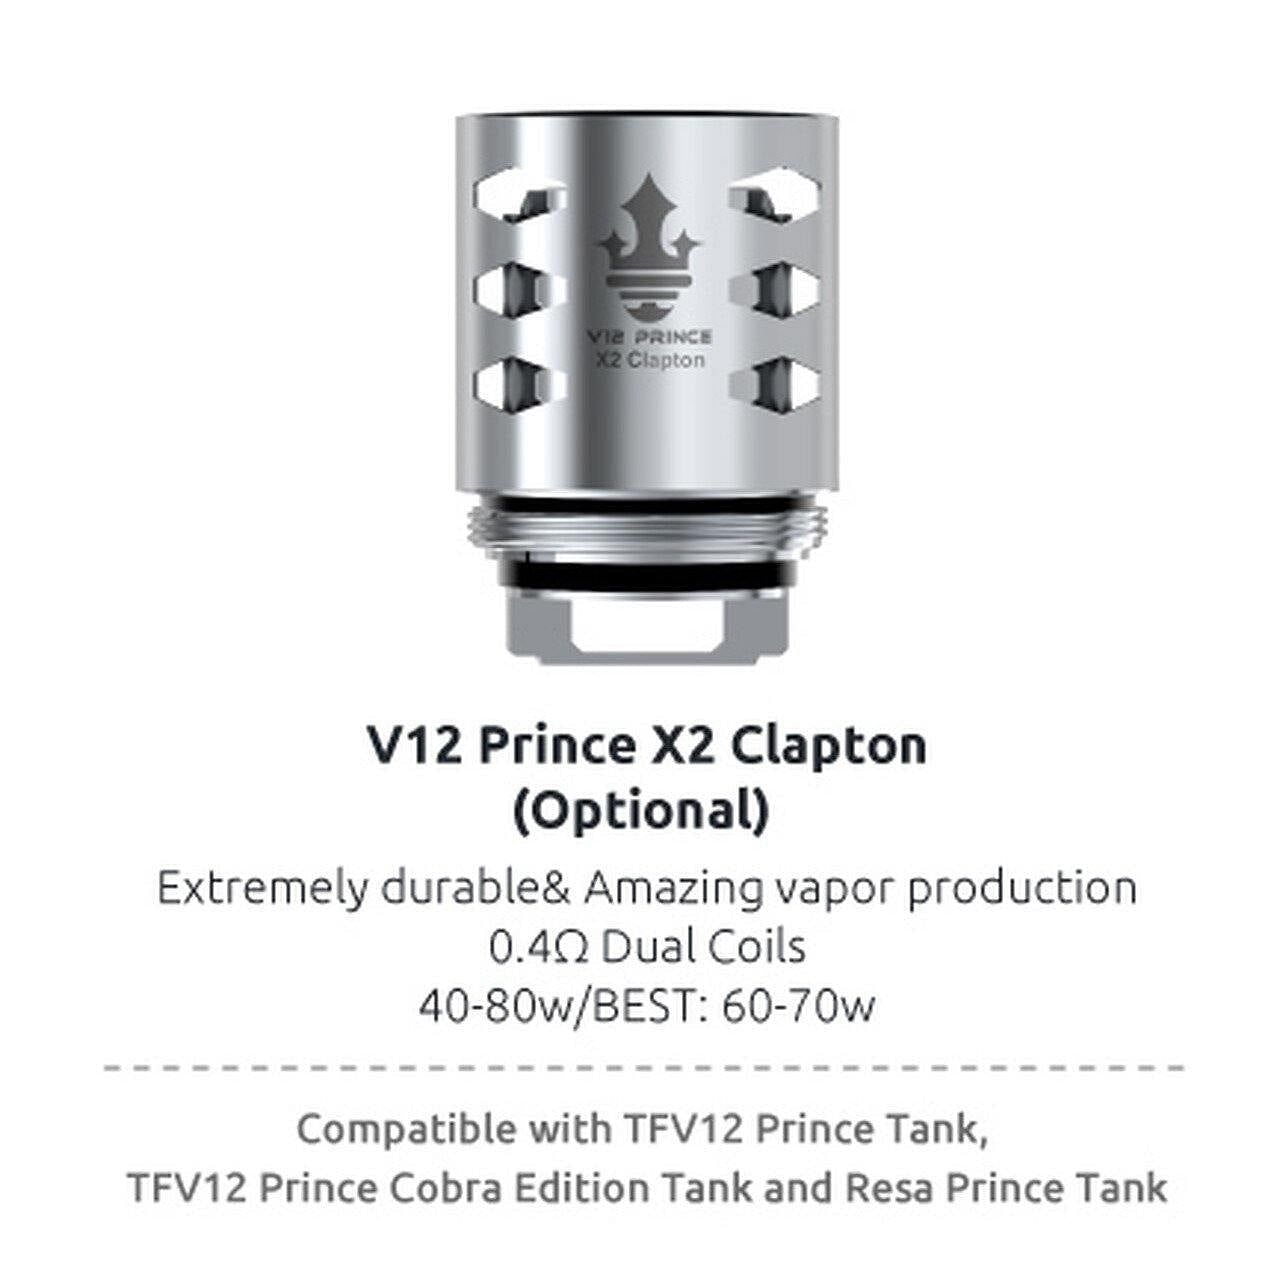 Smok V12 Prince X2 0.4 clapton coil - 3 pack